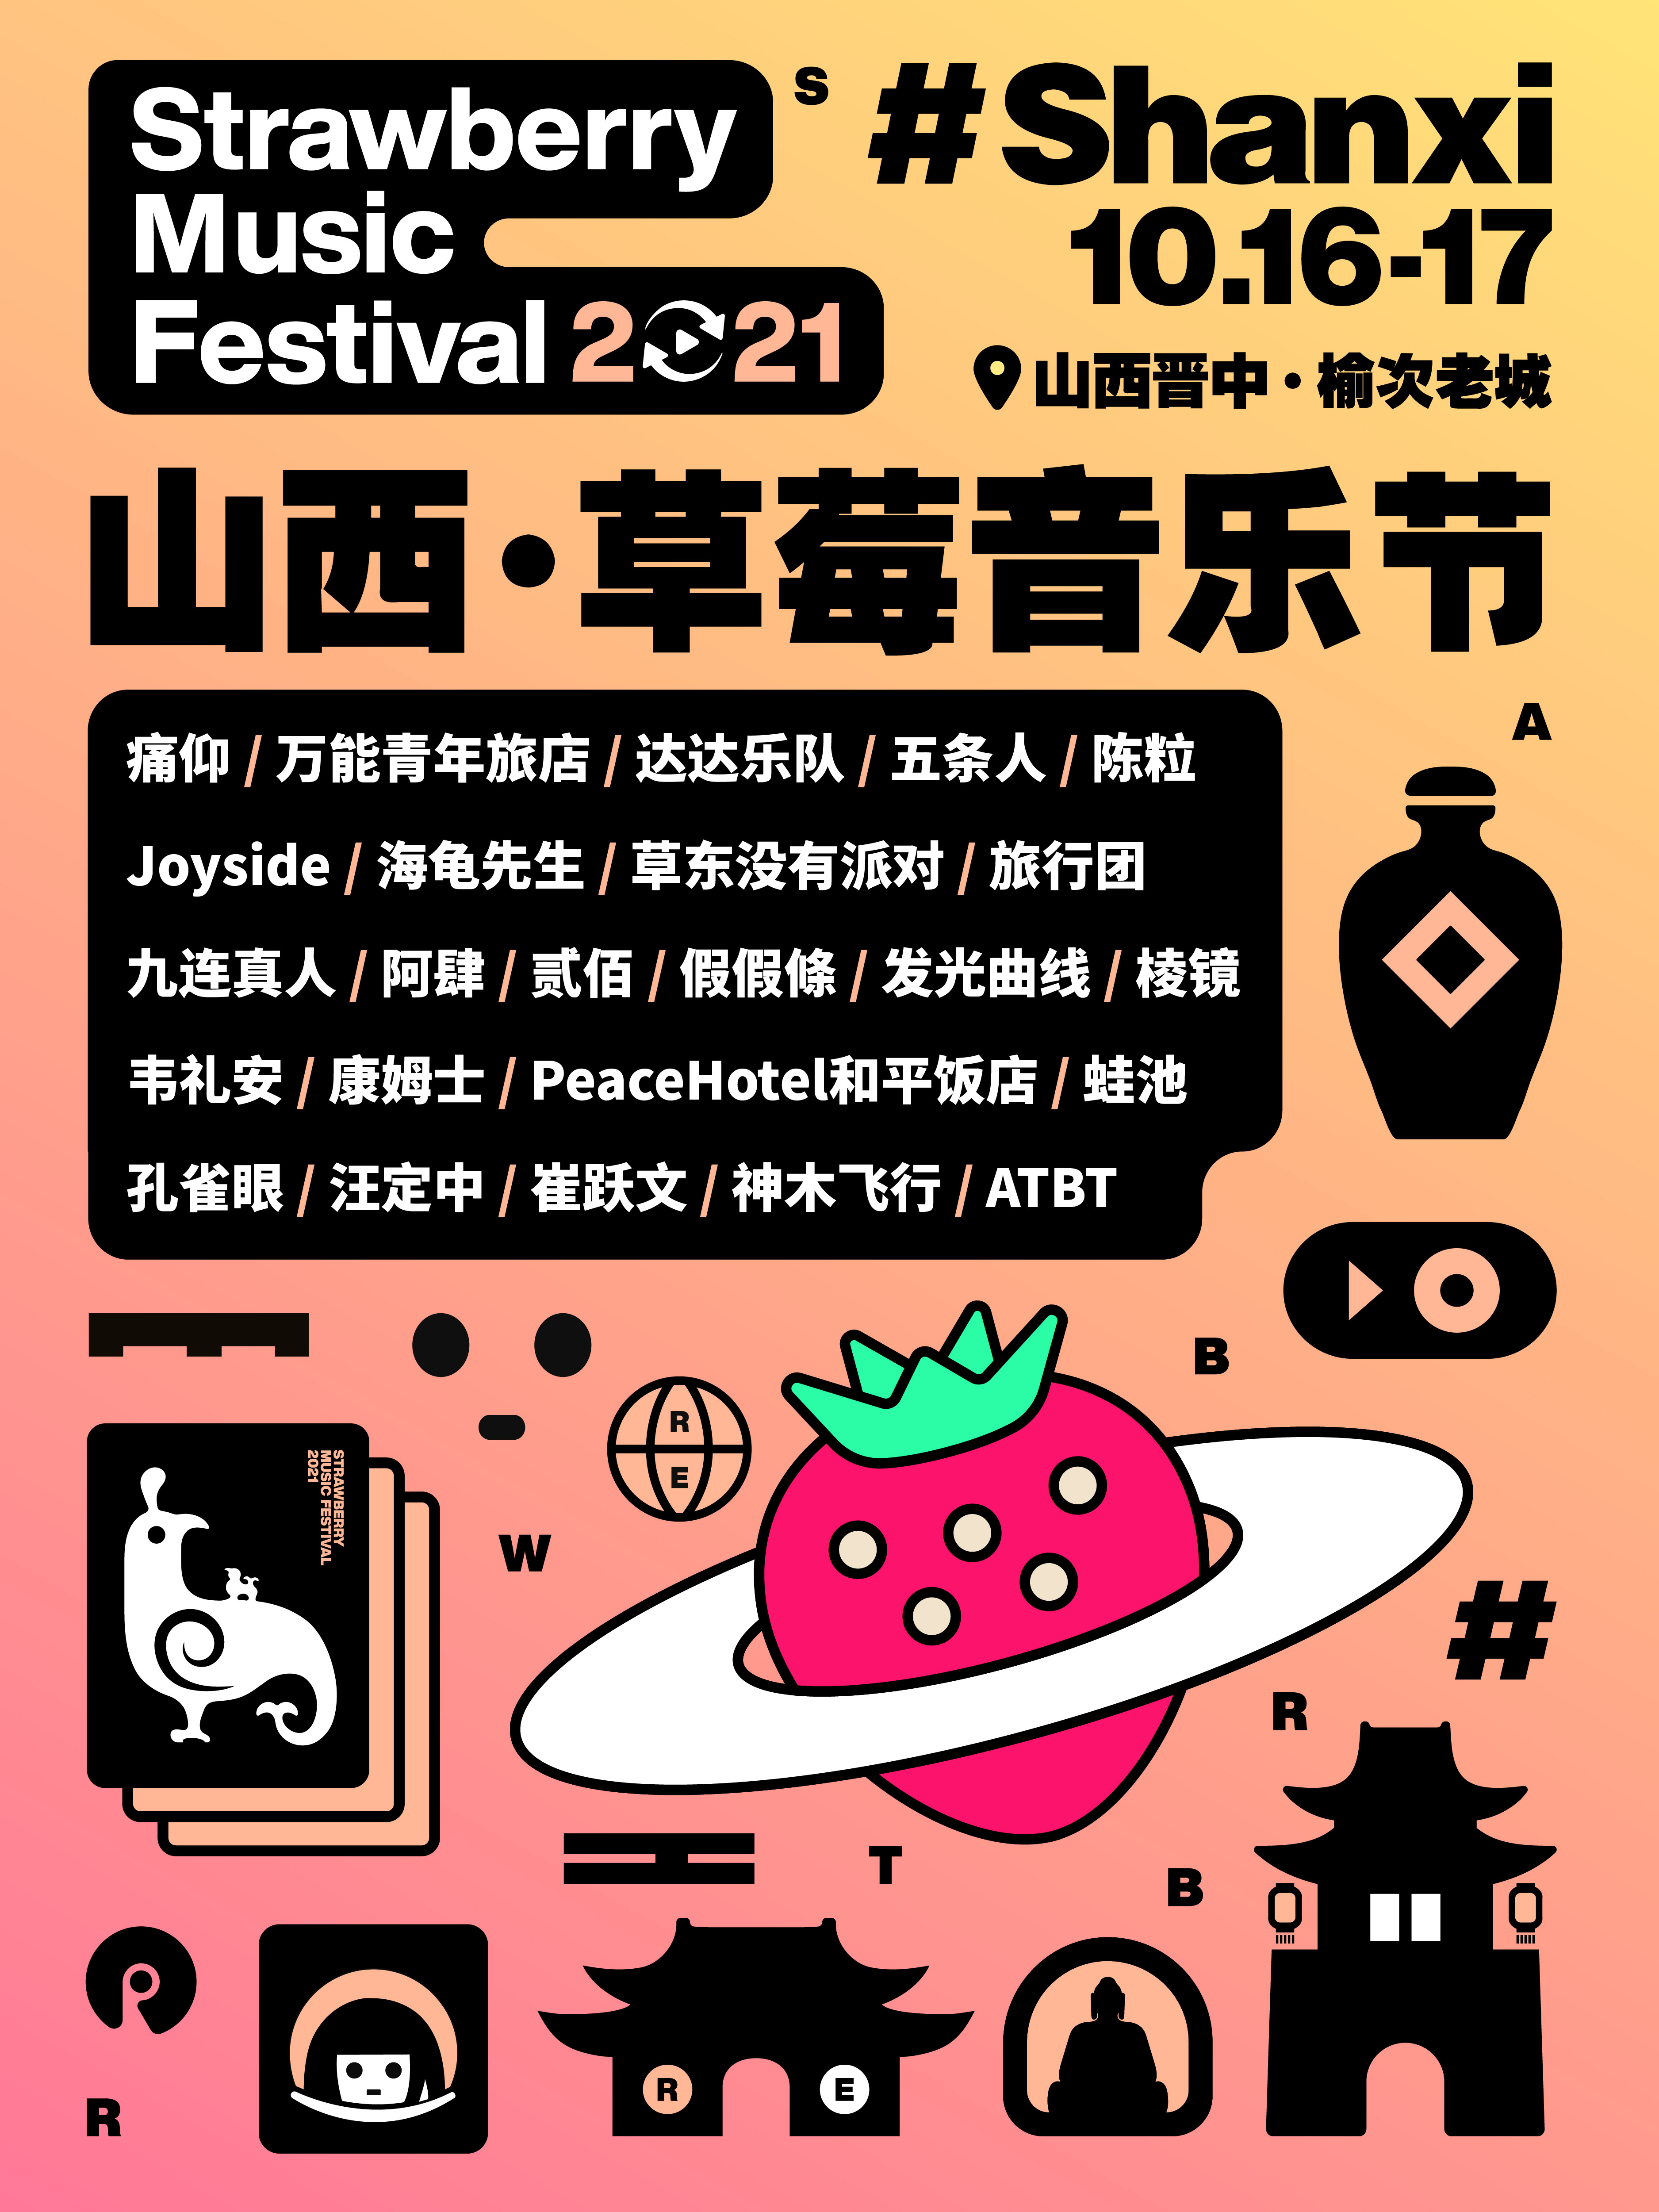 【晋中】2021山西草莓音乐节「痛仰/五条人/康姆士」